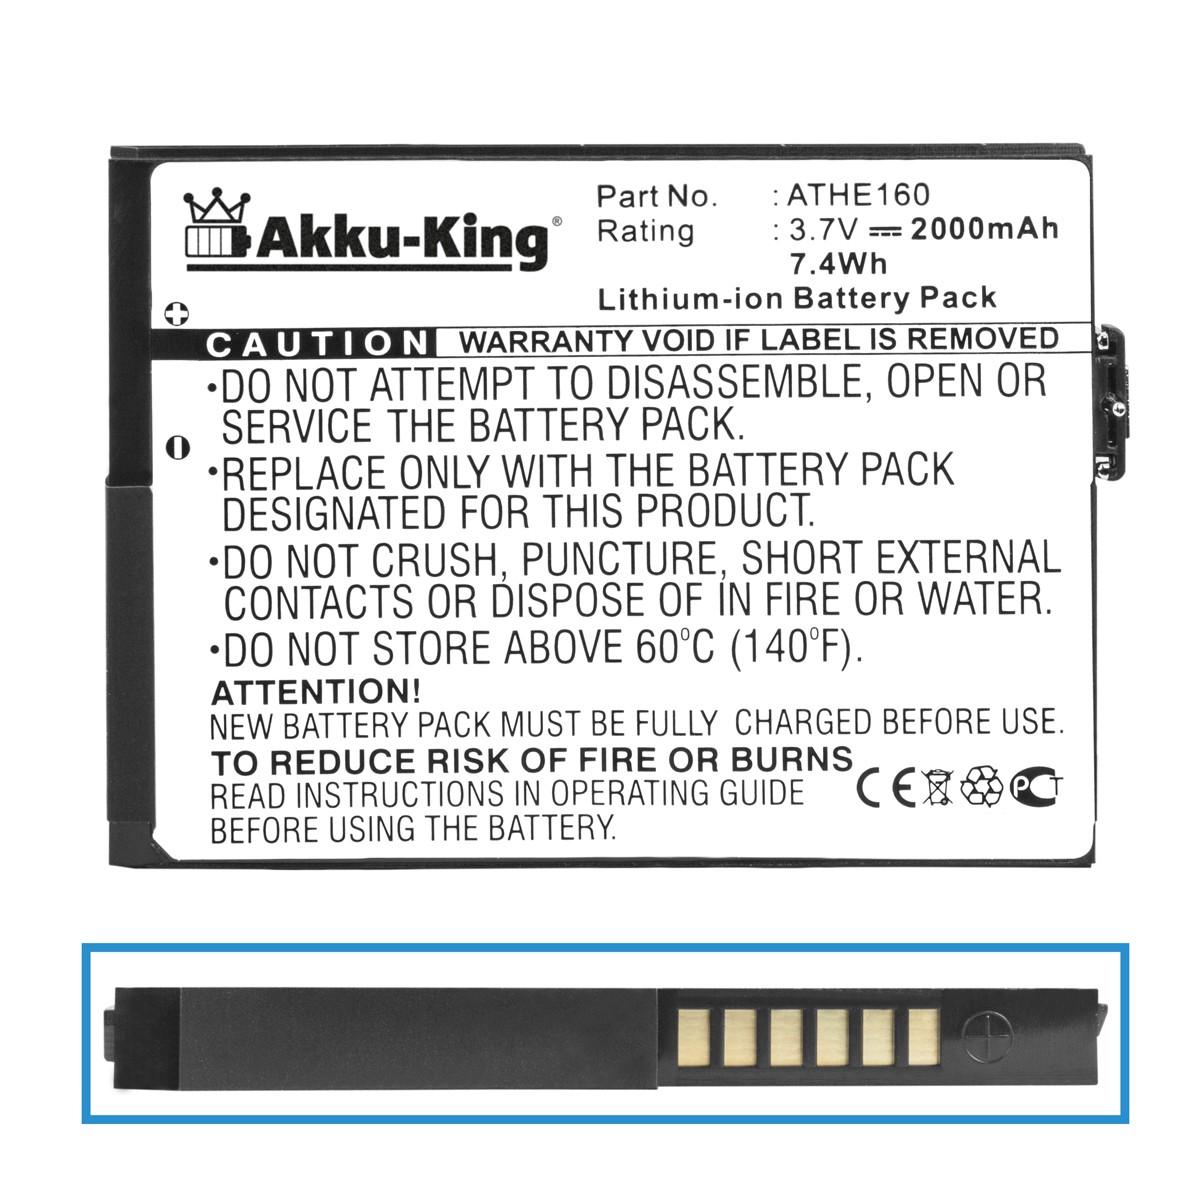 3.7 2000mAh HTC AKKU-KING mit Akku kompatibel Li-Ion Handy-Akku, Volt, BA S170